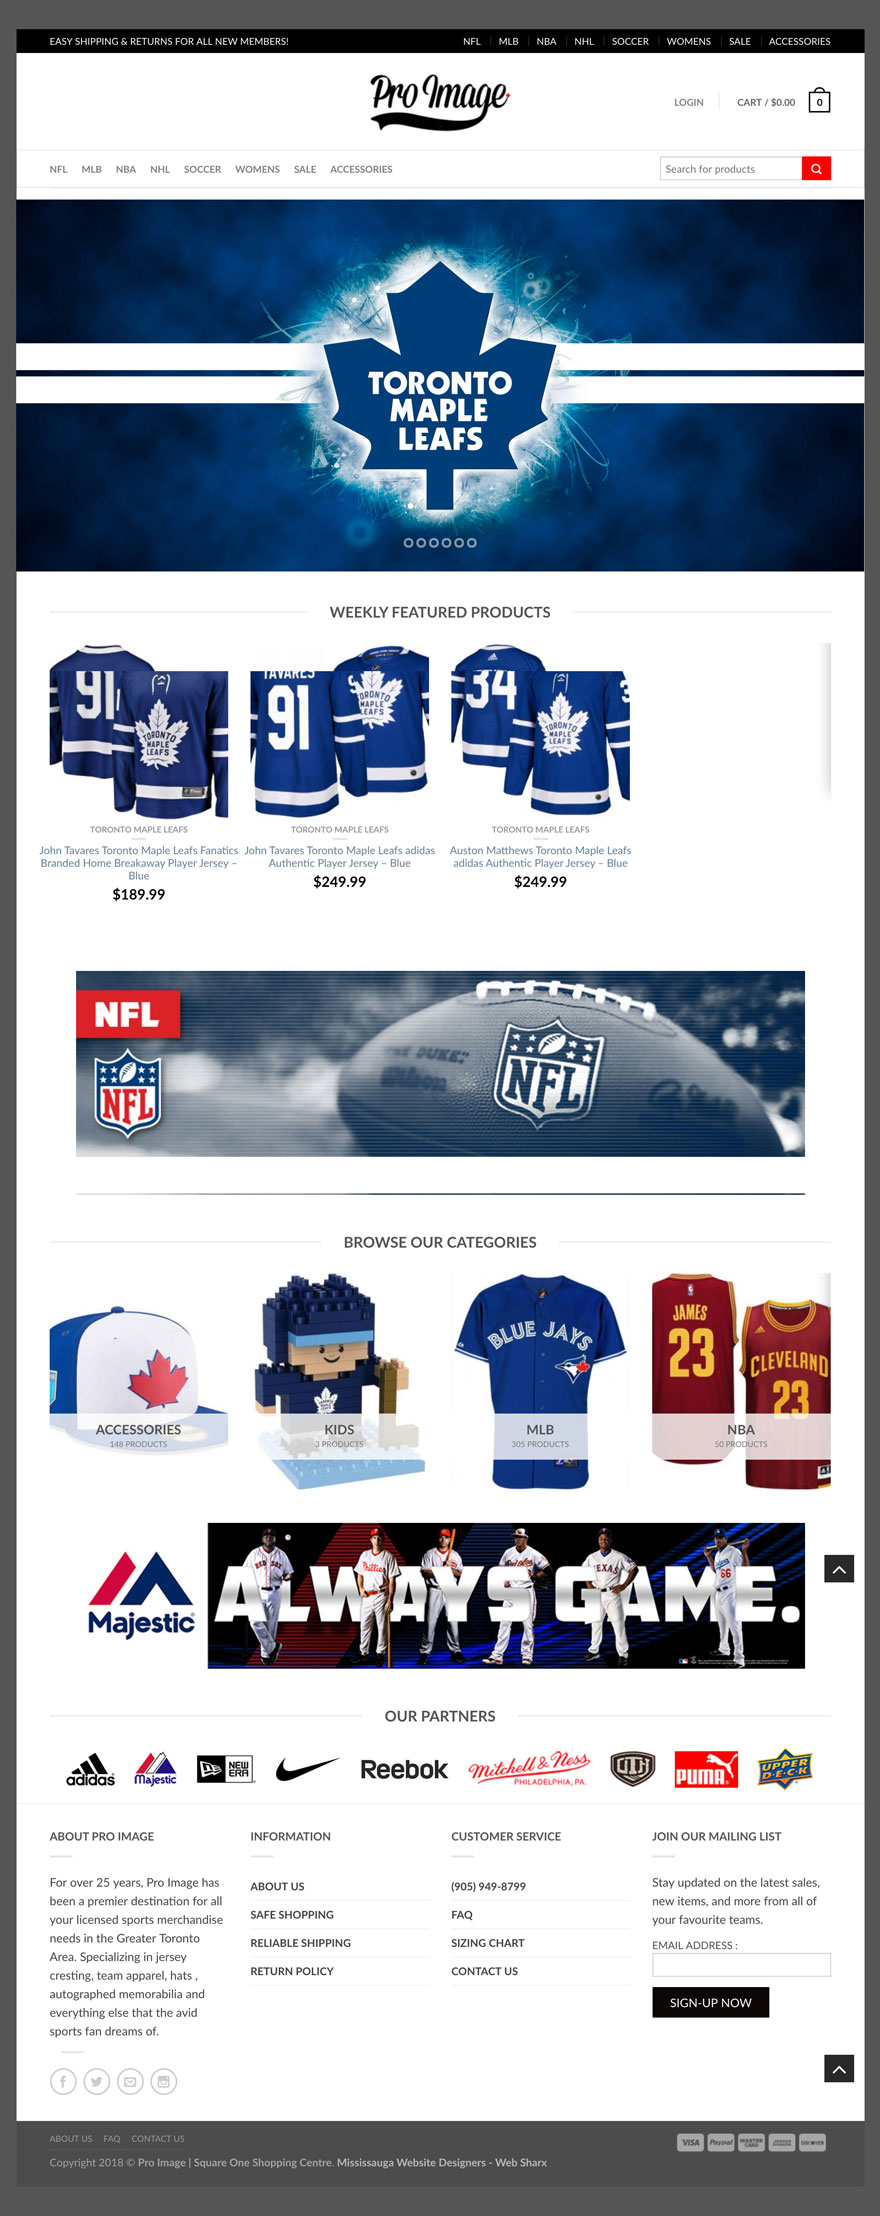 proimage-sports-apparel-web-design